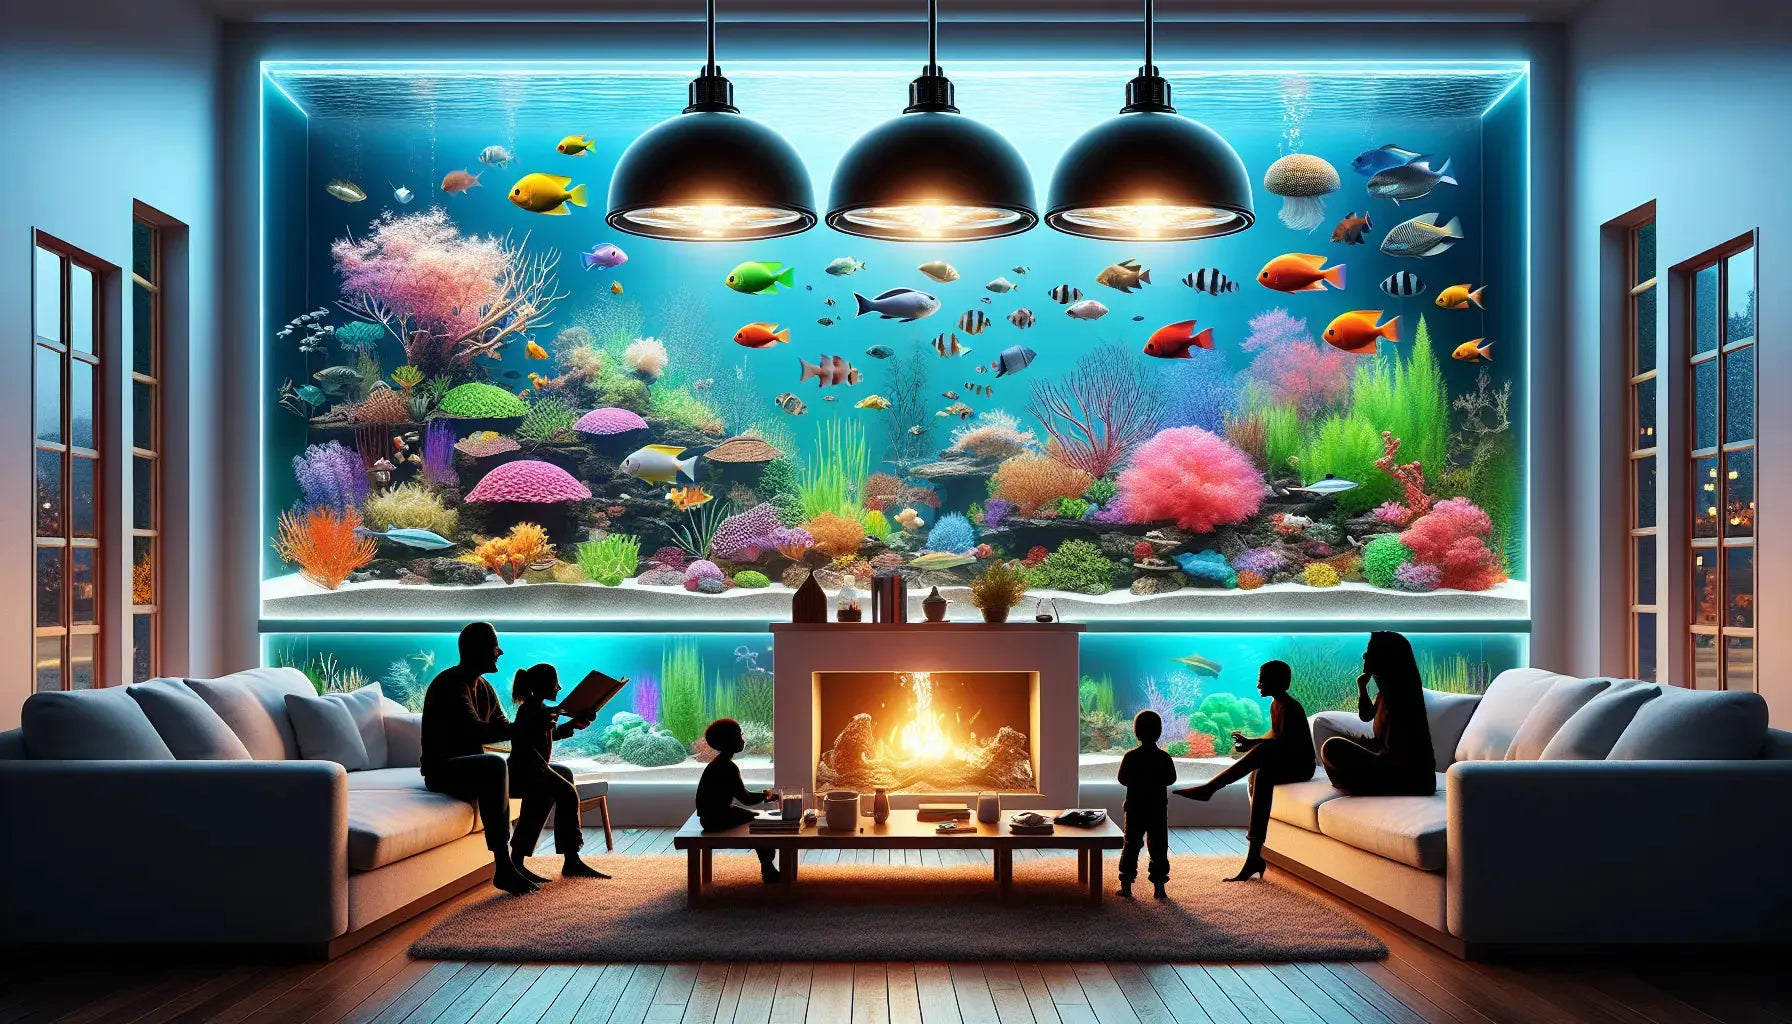 Illuminate Your Aquarium with These Top 5 Lights